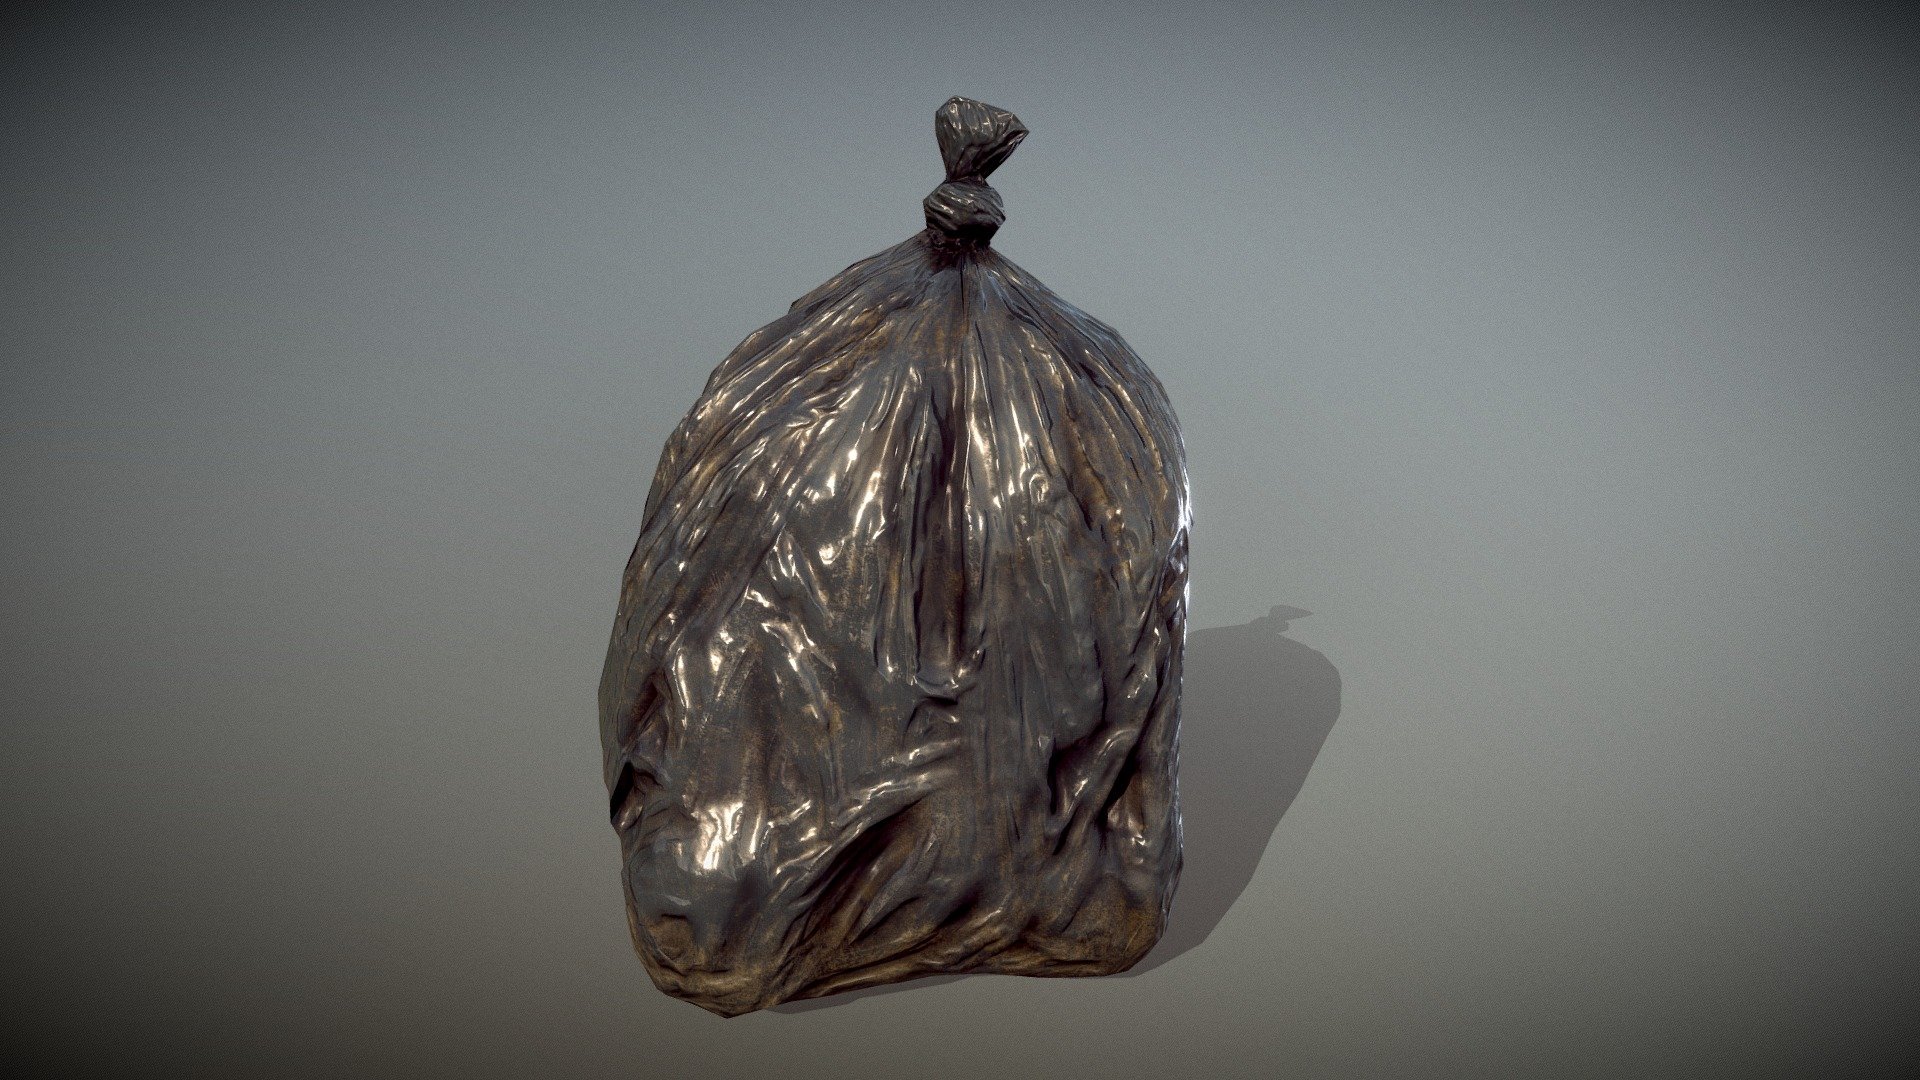 3D Trash Bag Full of Money - TurboSquid 2045833